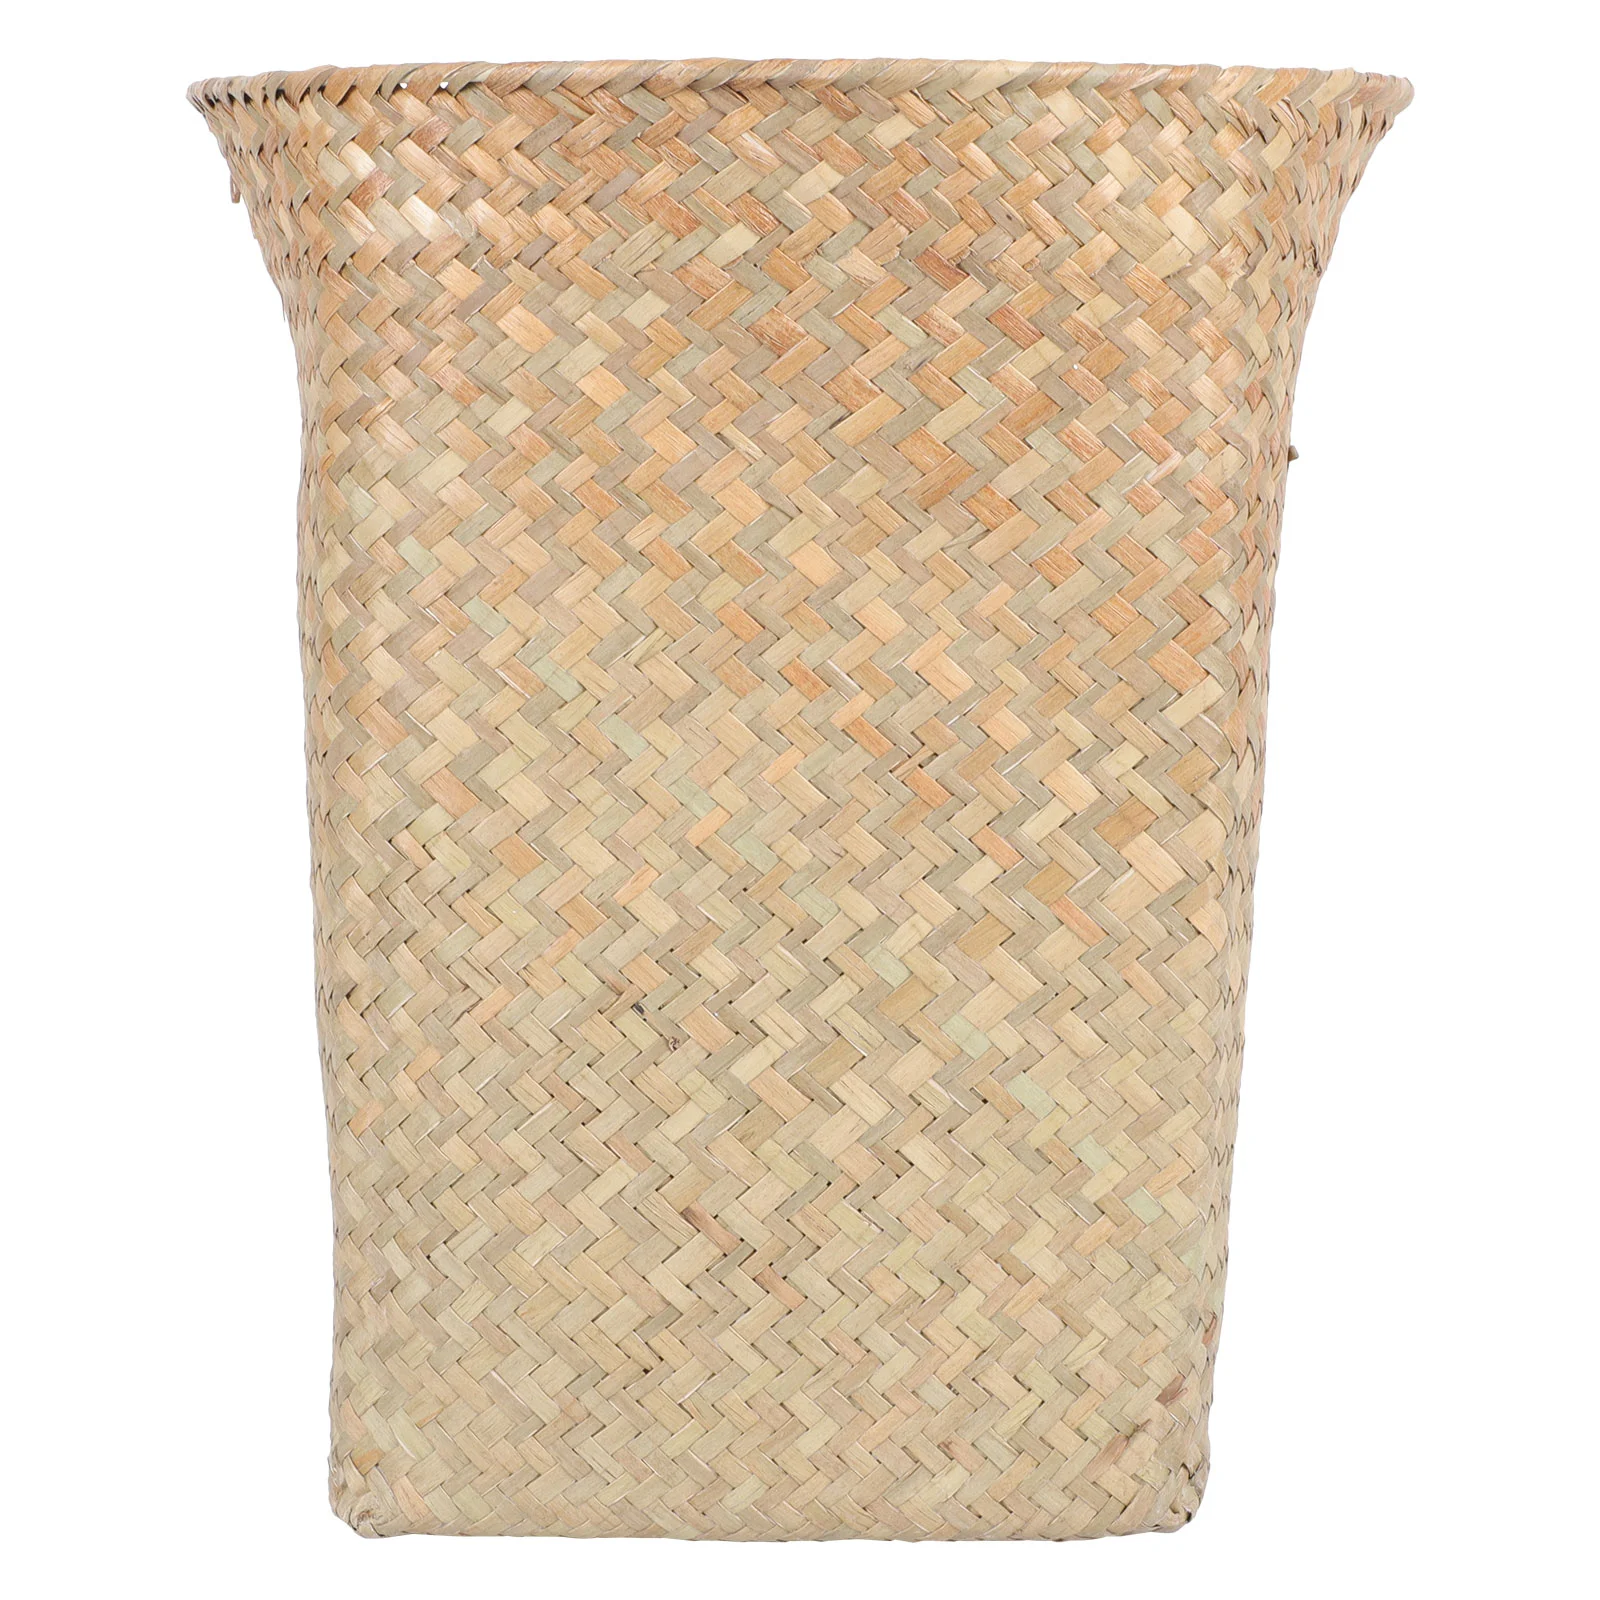 

Basket Can Trash Waste Woven Storage Bin Rattan Wicker Garbage Rubbish Seagrass Straw Wastebasket Container Baskets Paper